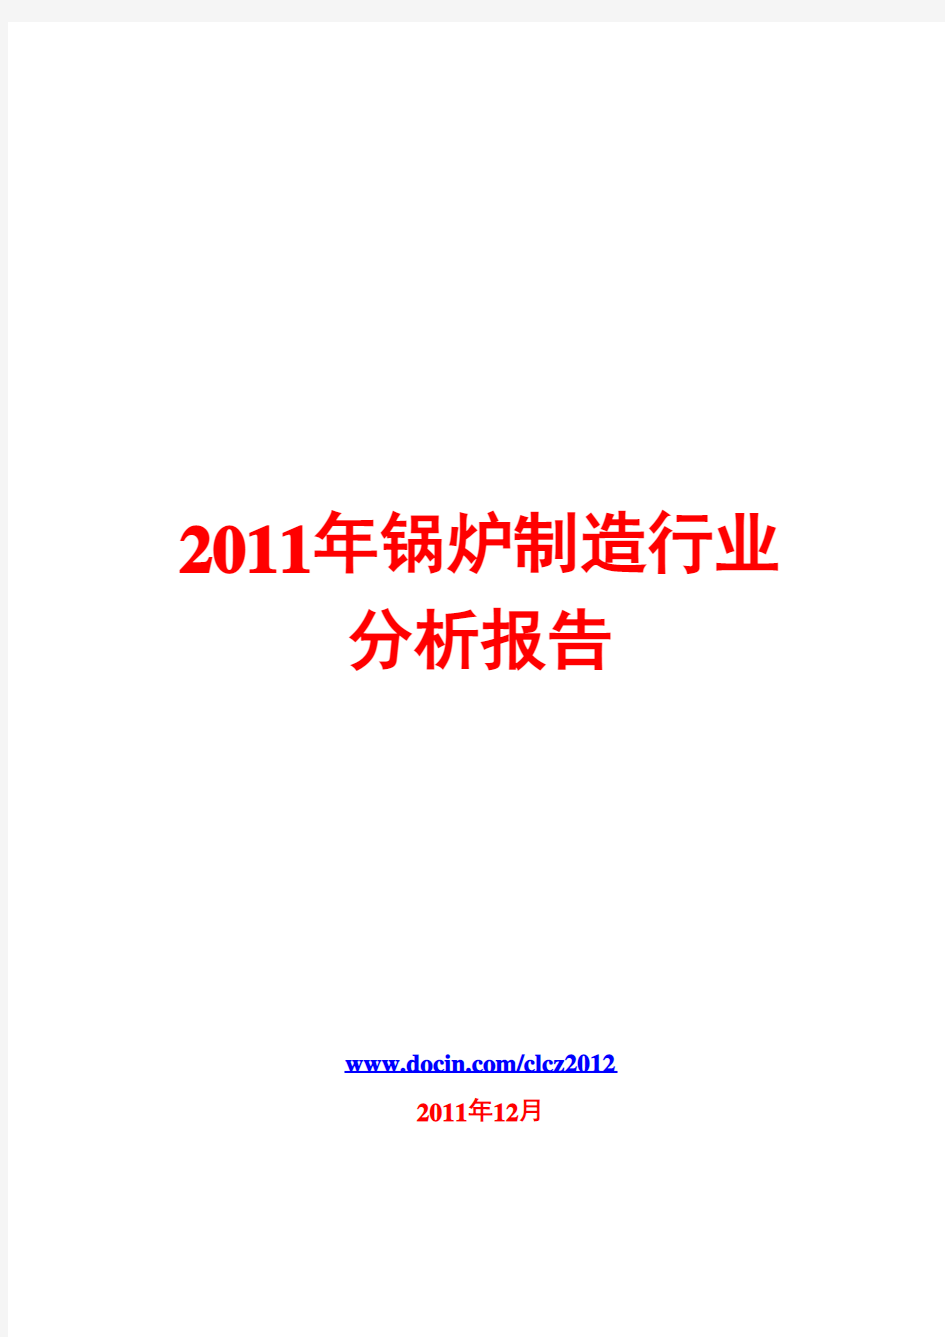 锅炉制造行业分析报告2011